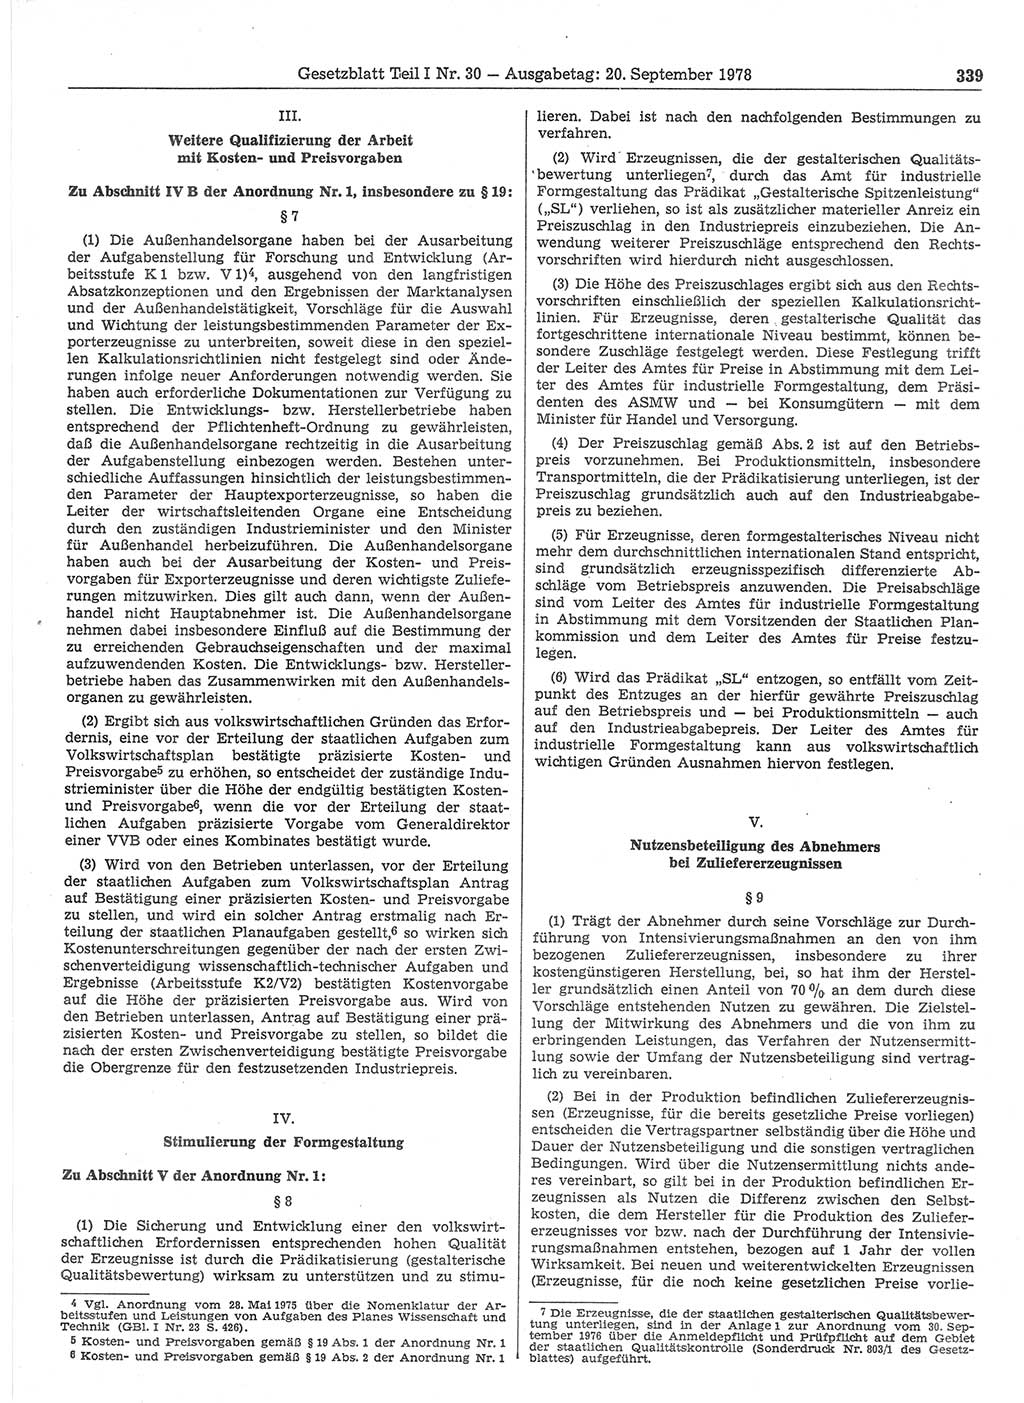 Gesetzblatt (GBl.) der Deutschen Demokratischen Republik (DDR) Teil Ⅰ 1978, Seite 339 (GBl. DDR Ⅰ 1978, S. 339)